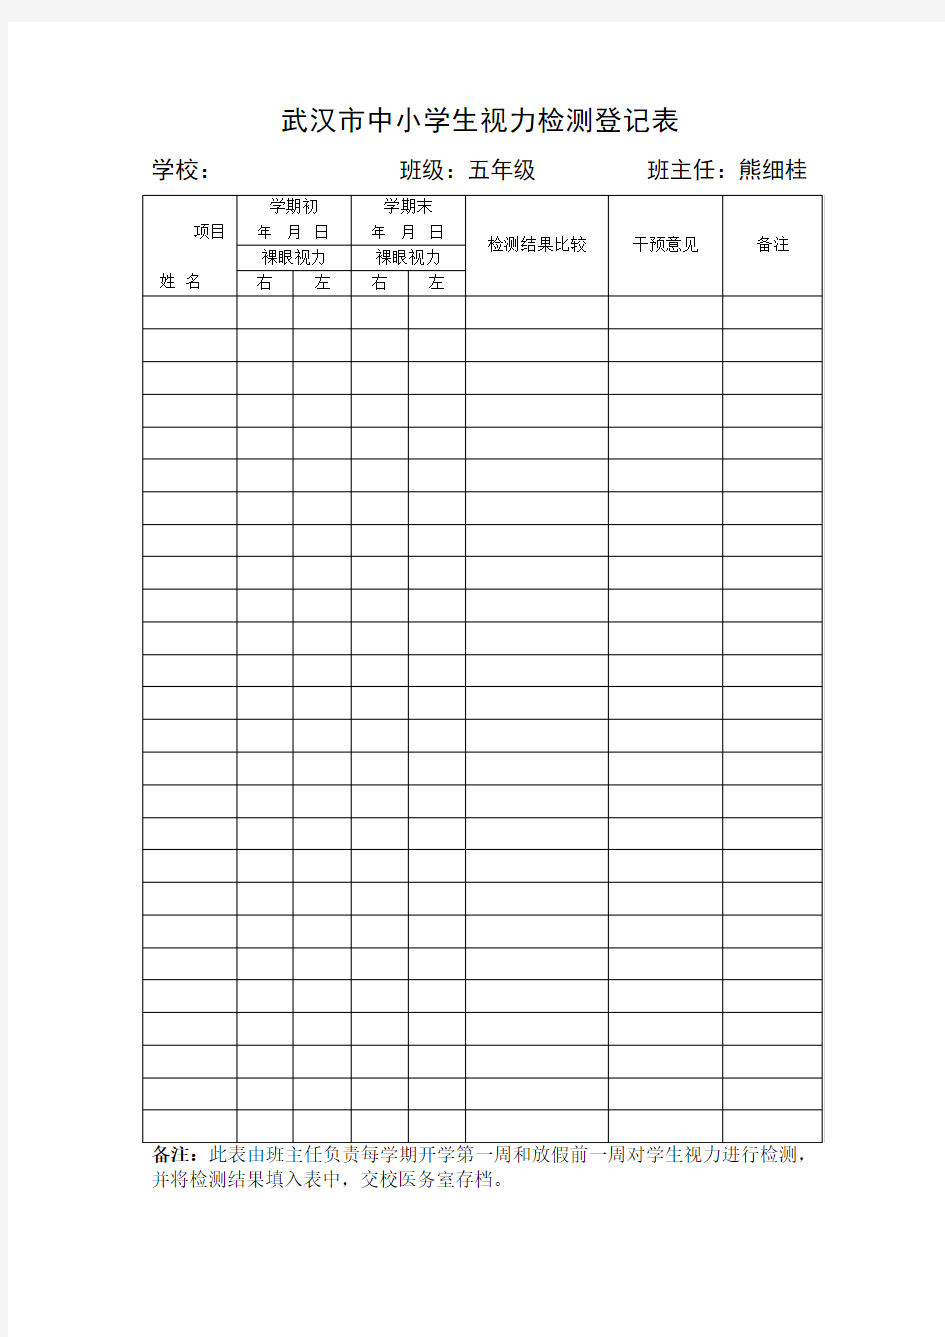 武汉市中小学生视力检测登记表